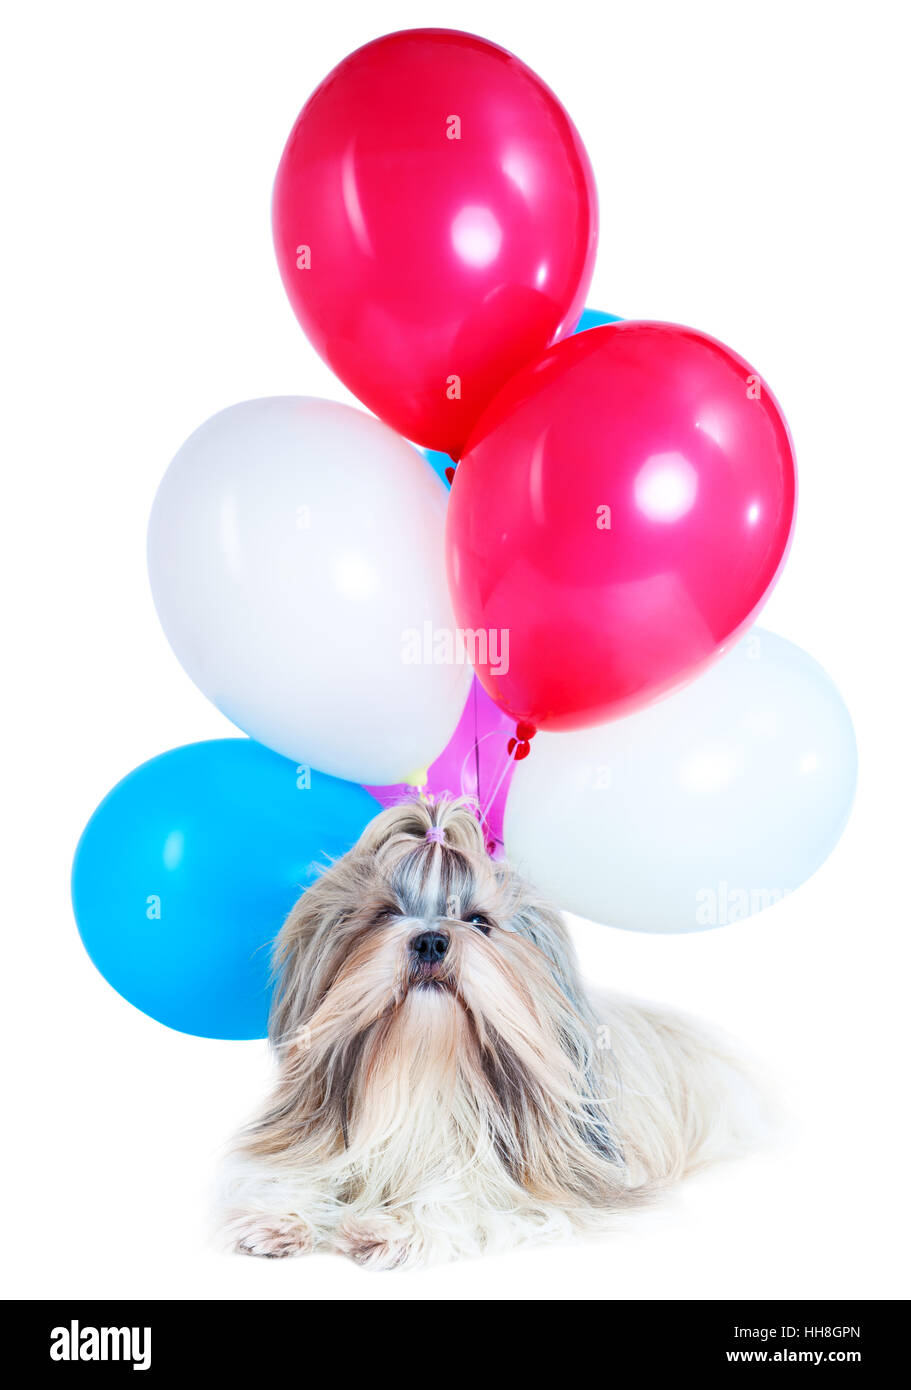 Capelli lunghi shih tzu cane vacanza con rosso, blu e bianco palloncini. Su sfondo bianco. Holiday celebrazione del concetto. Foto Stock